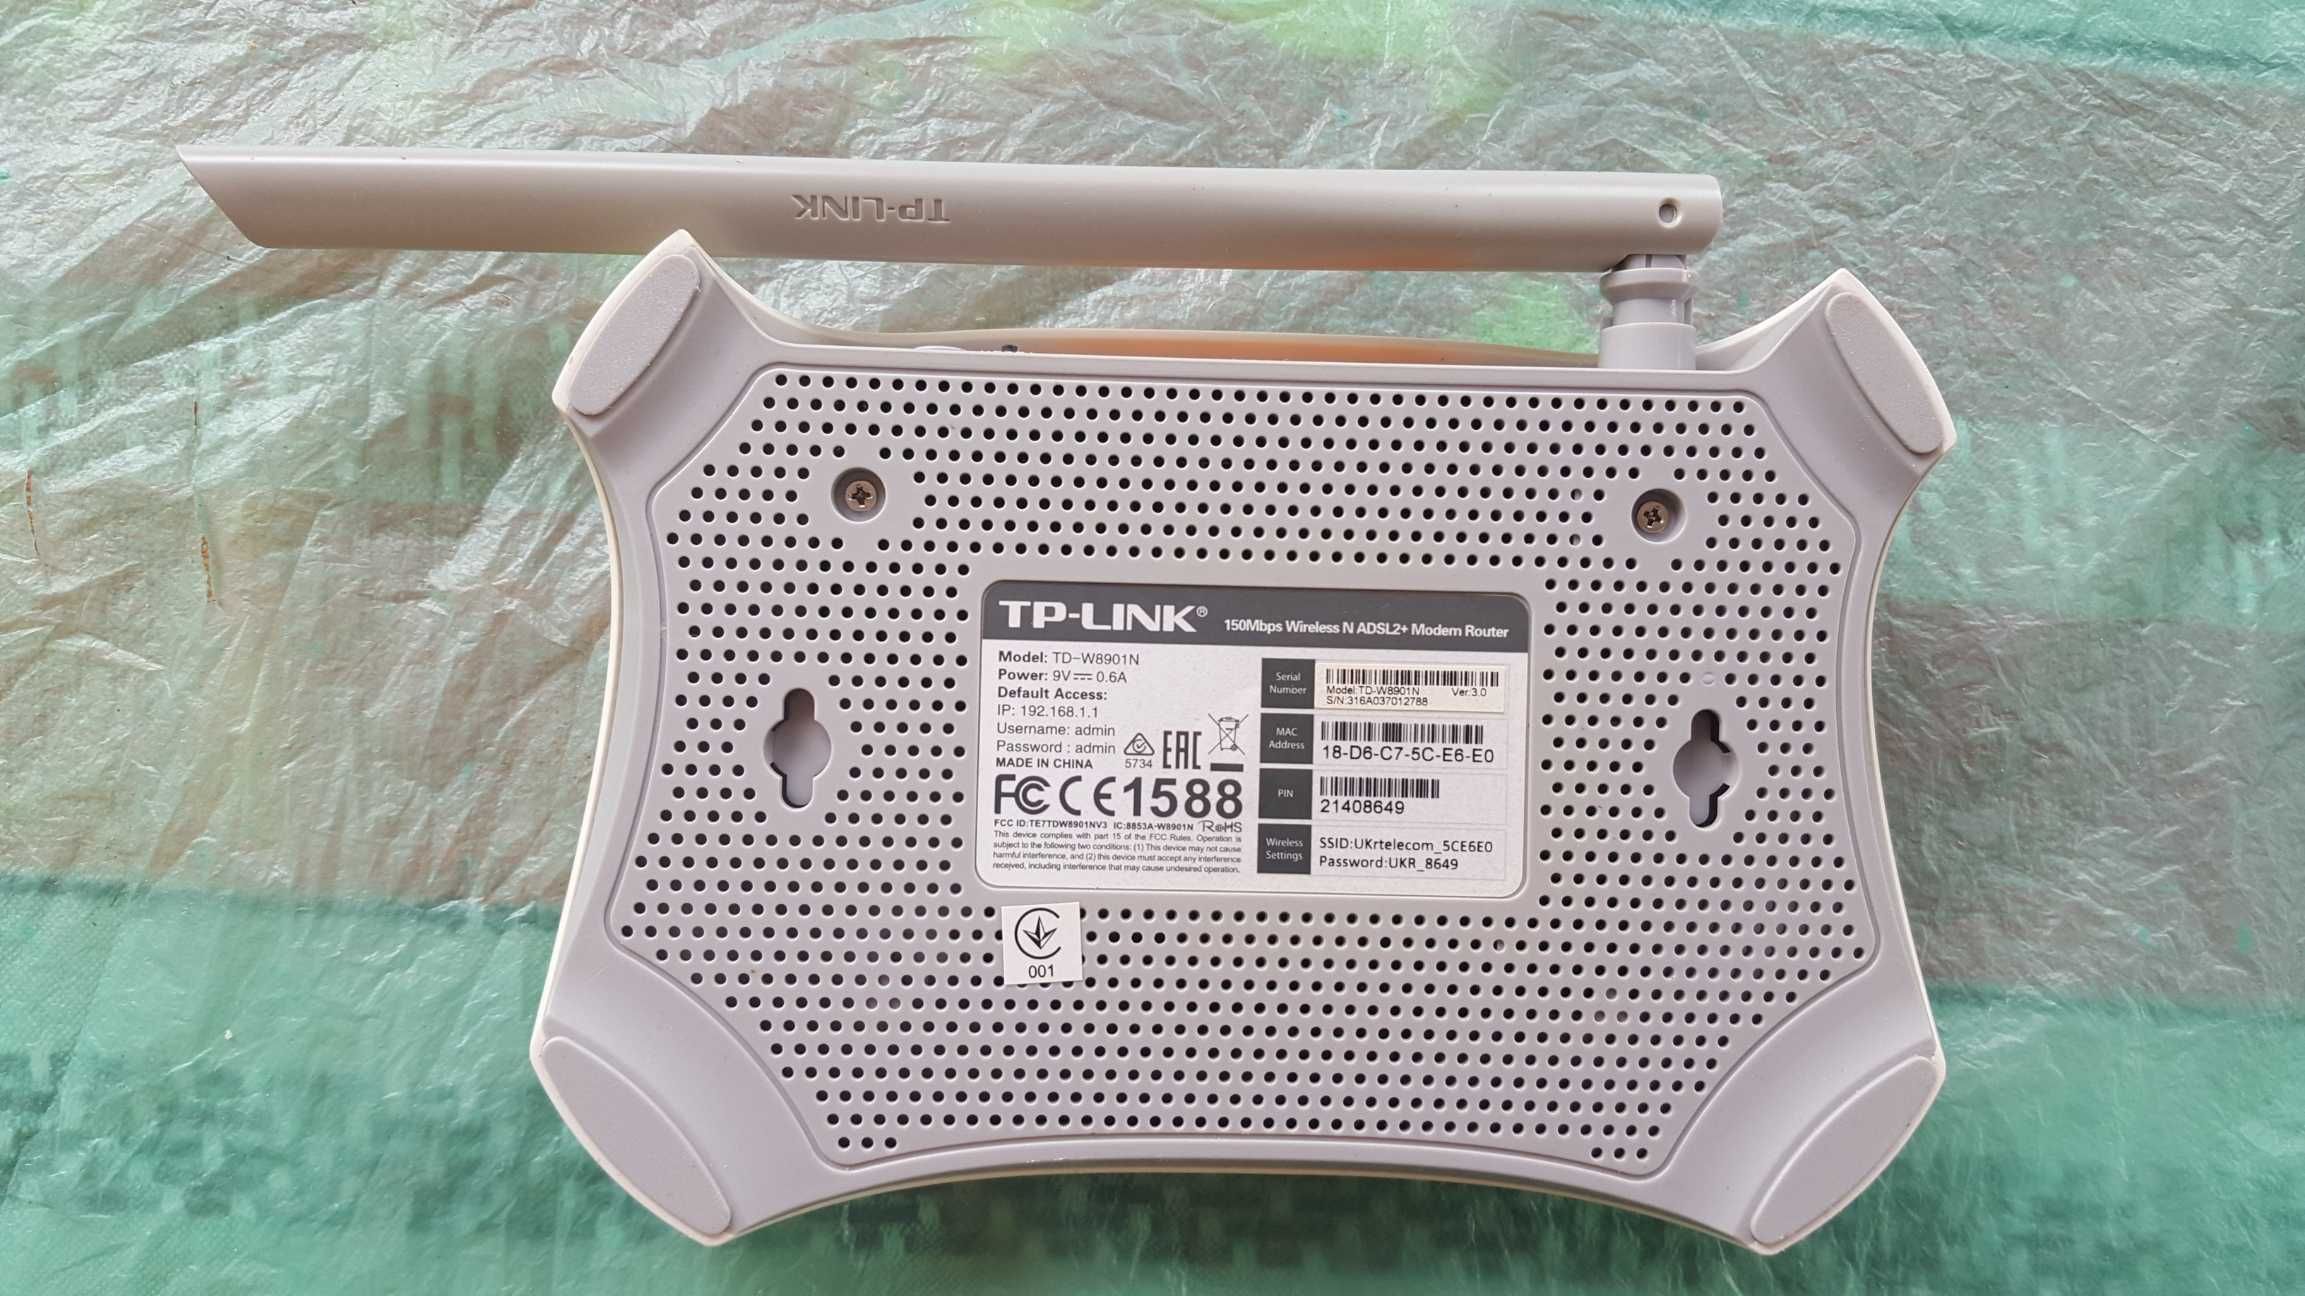 Бездротовий модем(роутер)TP-LINK TD-W8901N + спліттер для УКРТЕЛЕКОМ .